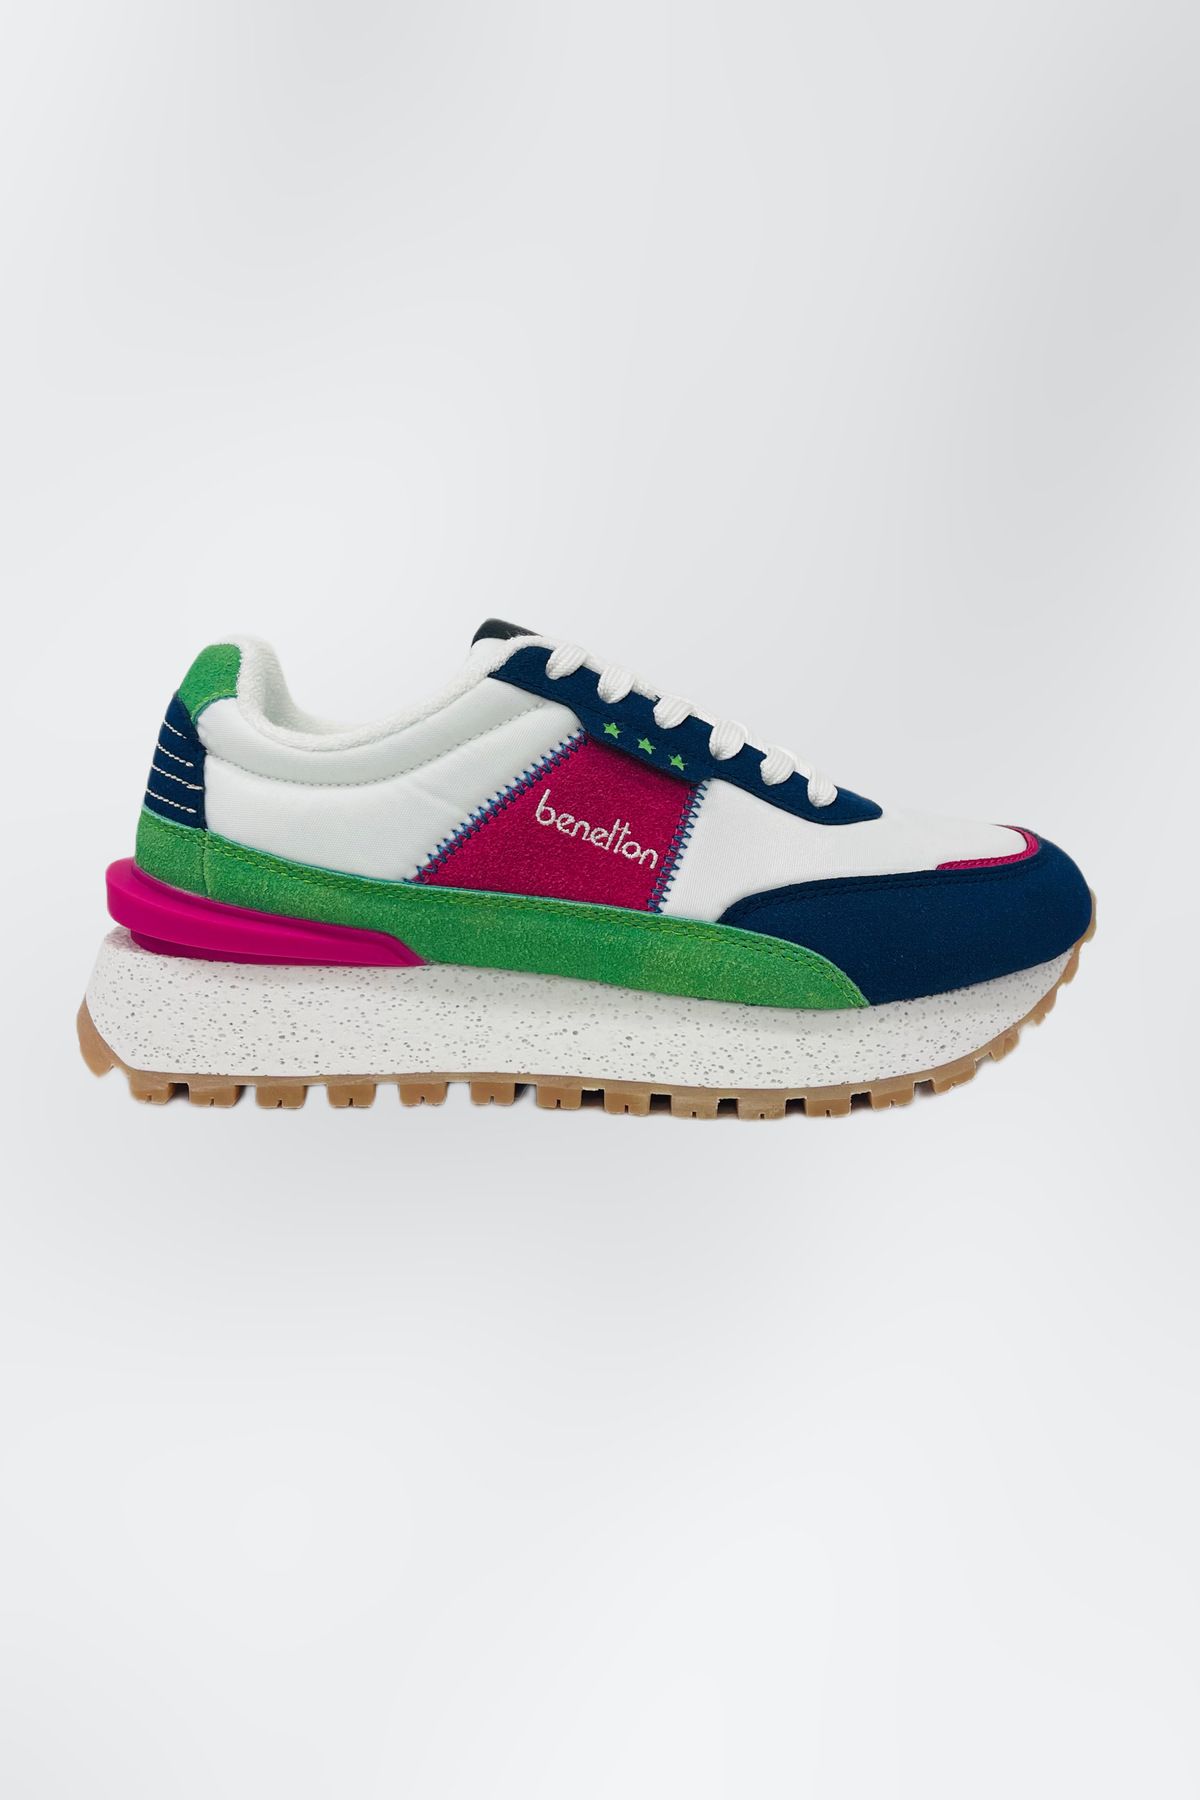 Benetton Kadın Spor Ayakkabı 10070-24